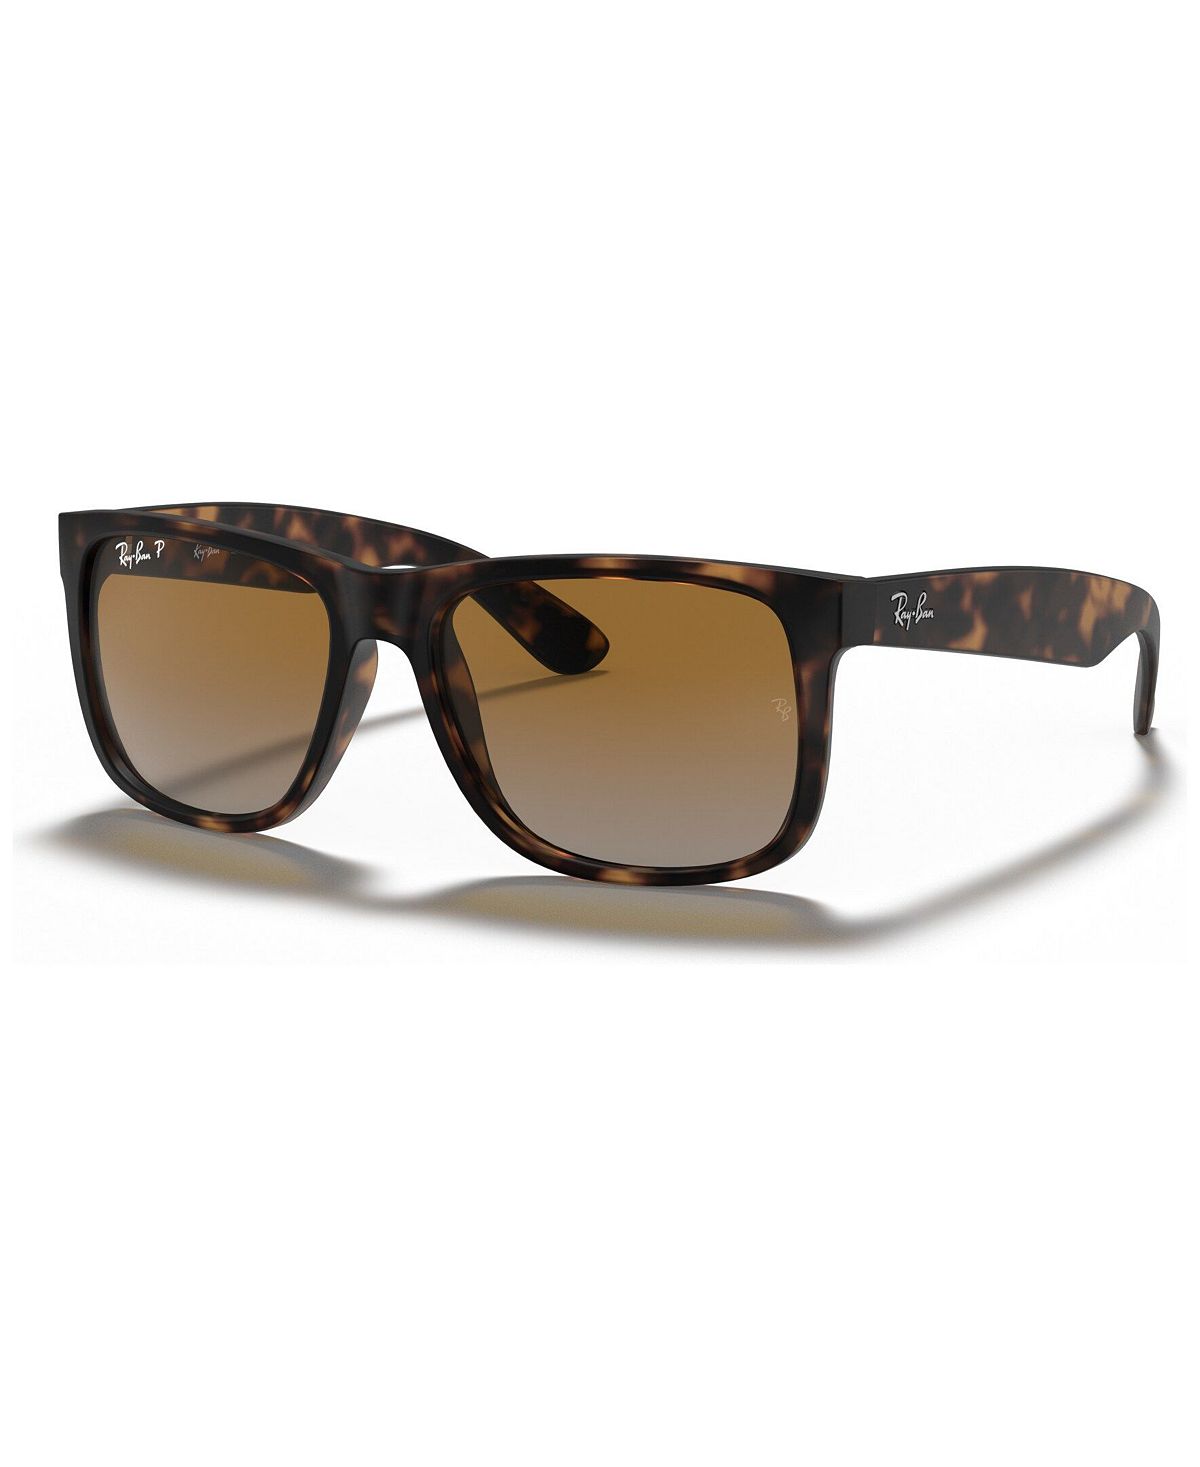 цена Поляризованные солнцезащитные очки, RB4165 Justin с градиентом Ray-Ban